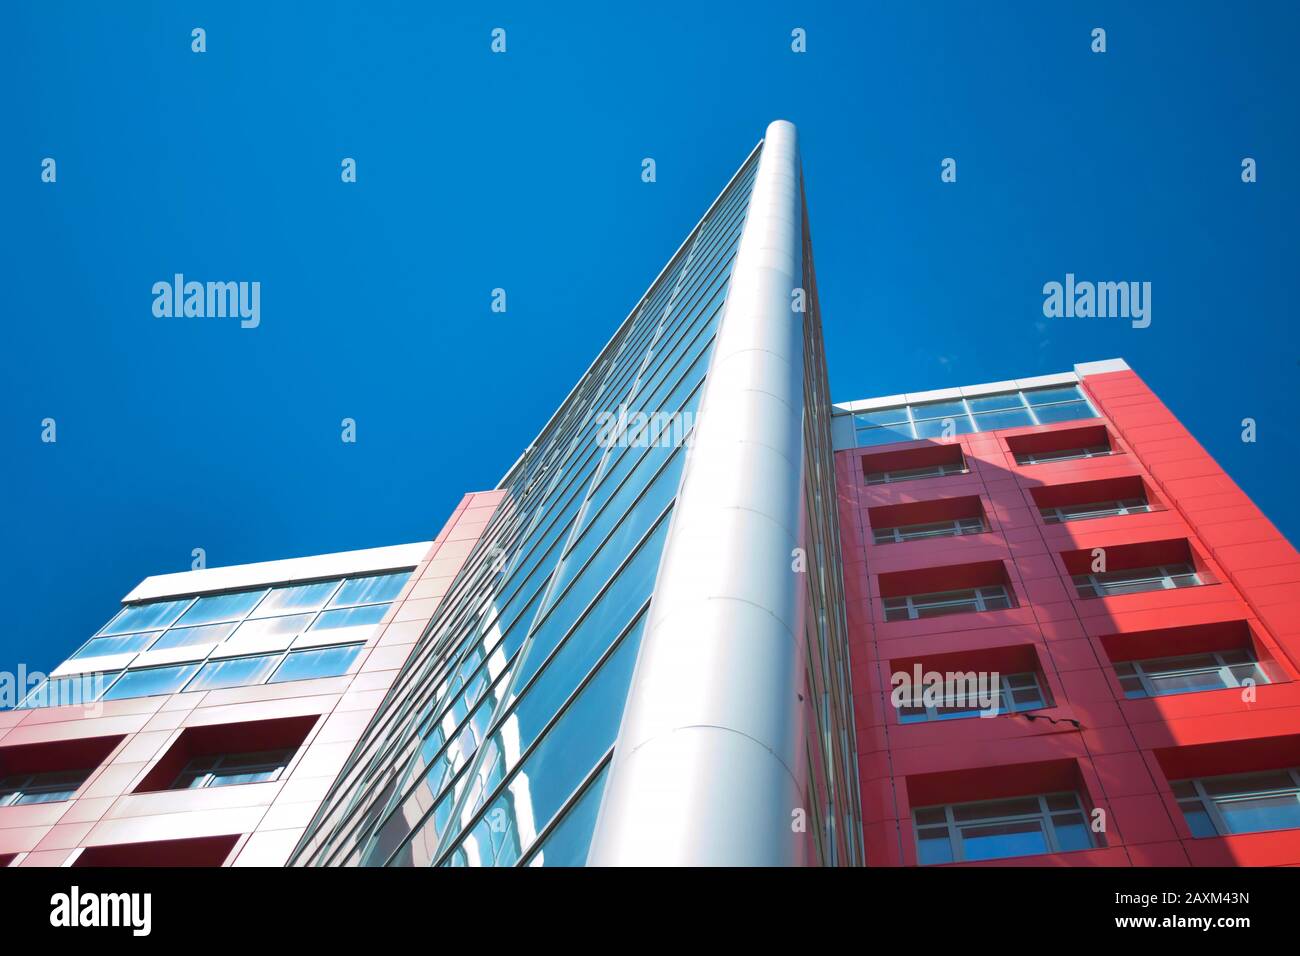 Grattacielo con finestre a specchio e cielo blu chiaro, vista dal basso Foto Stock